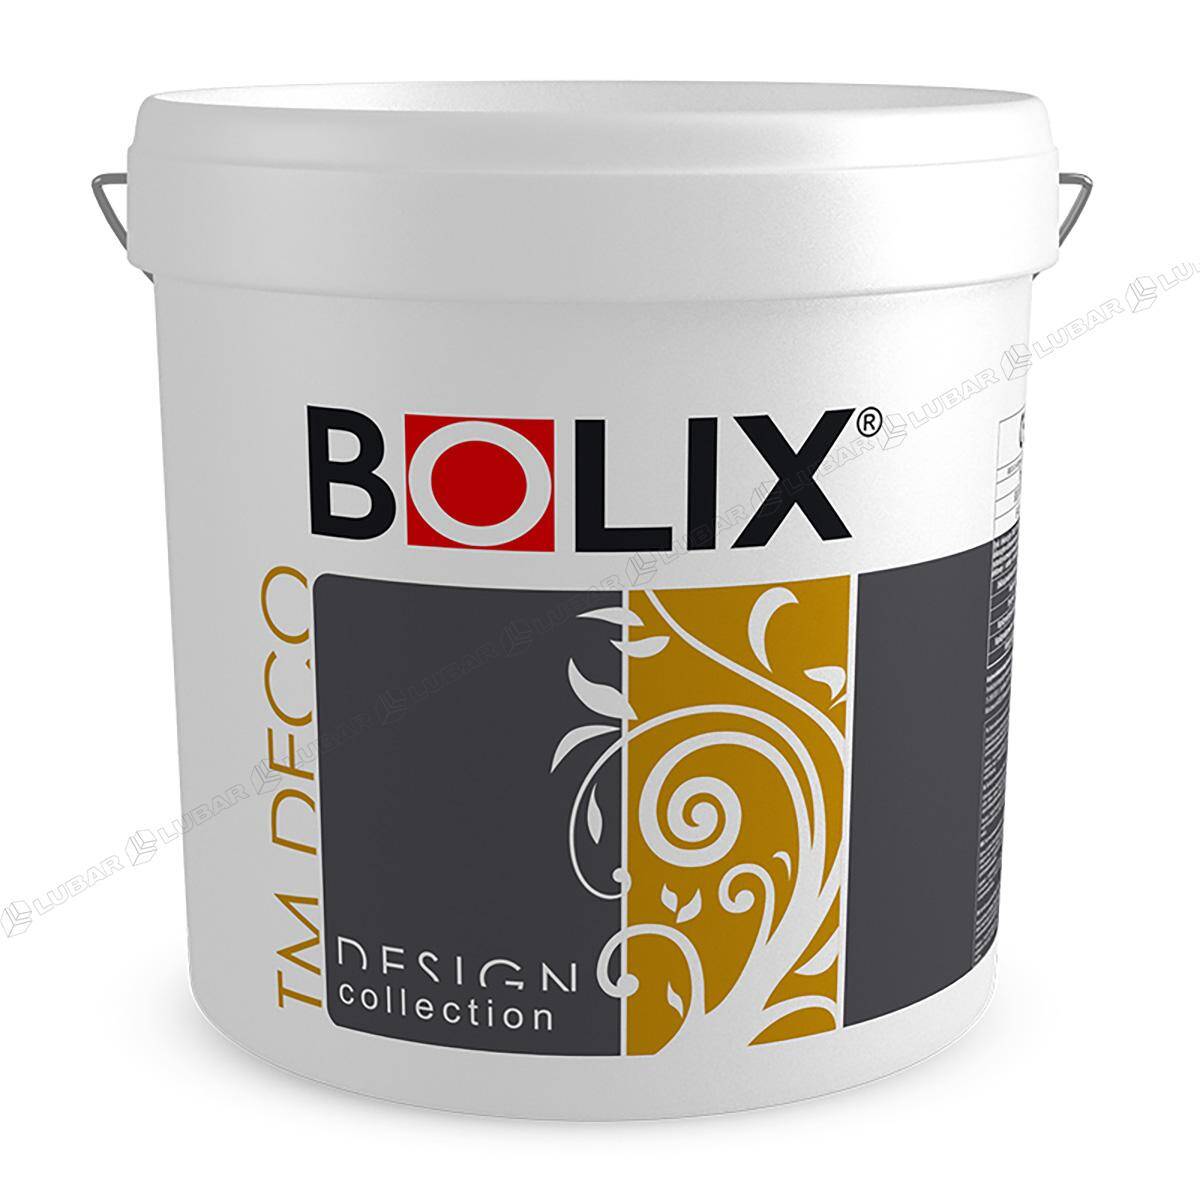 BOLIX TM DECO Tynk dekoracyjny z miką 25 kg CLOUD OF DUST TMD47